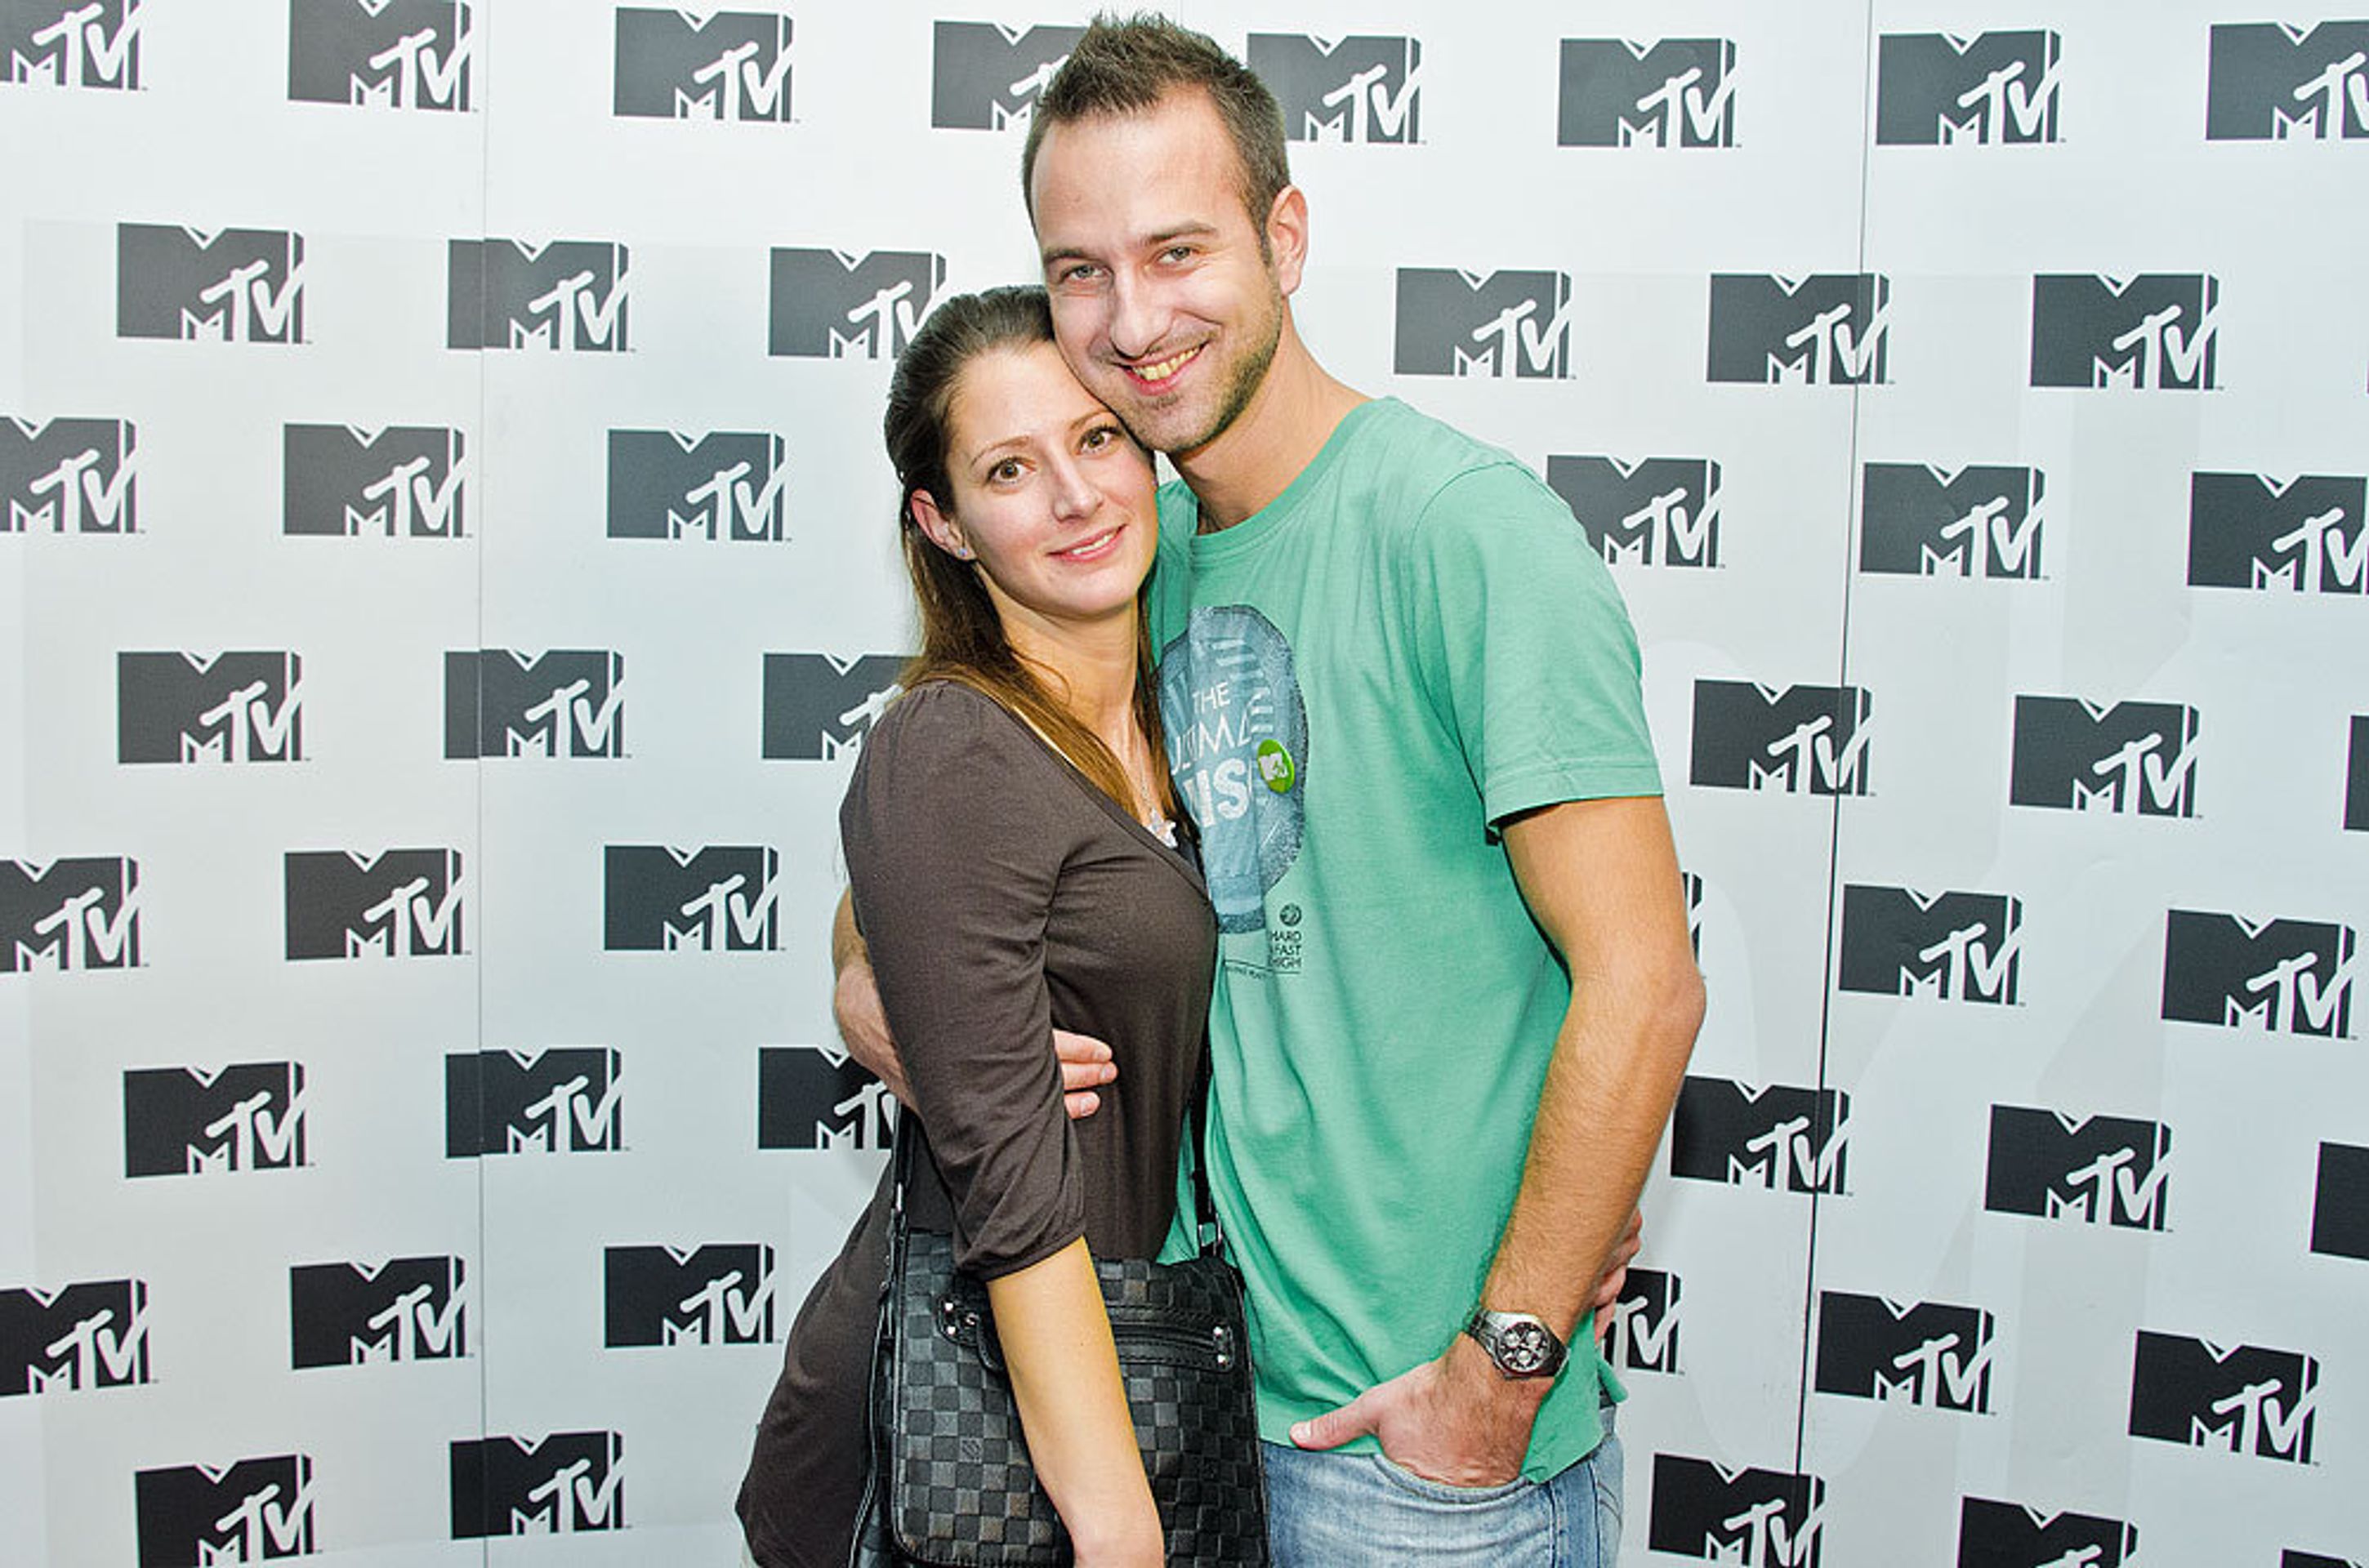 MTV - 4 - MTV oslavila třetí narozeniny (8/10)